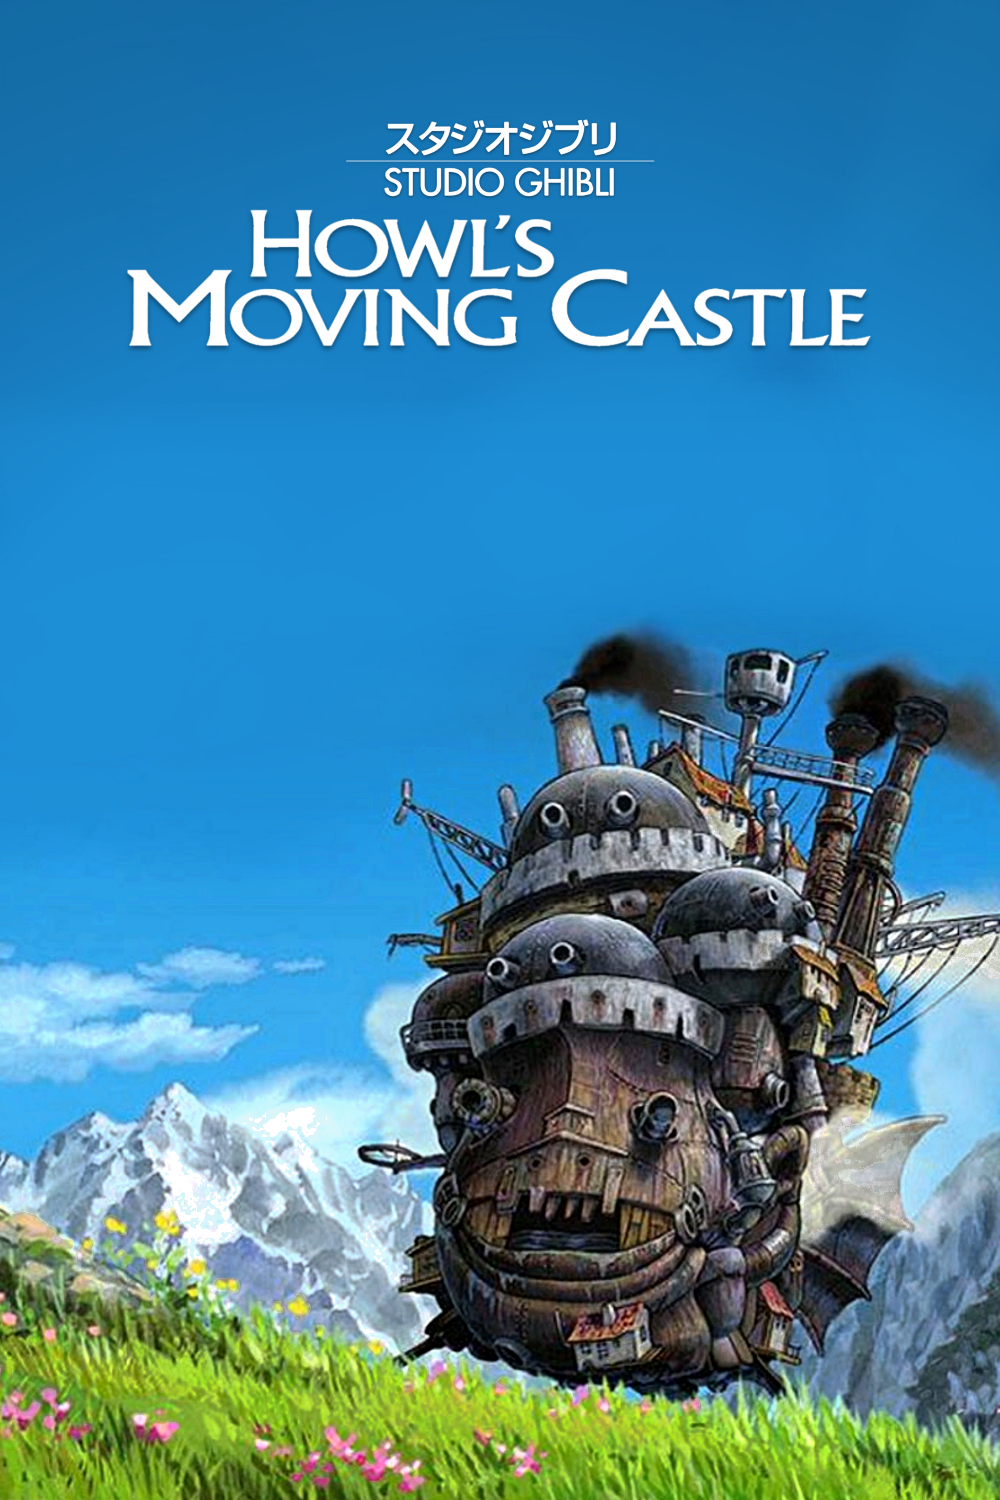 قلعهٔ متحرک هاول (Howl’s Moving Castle)